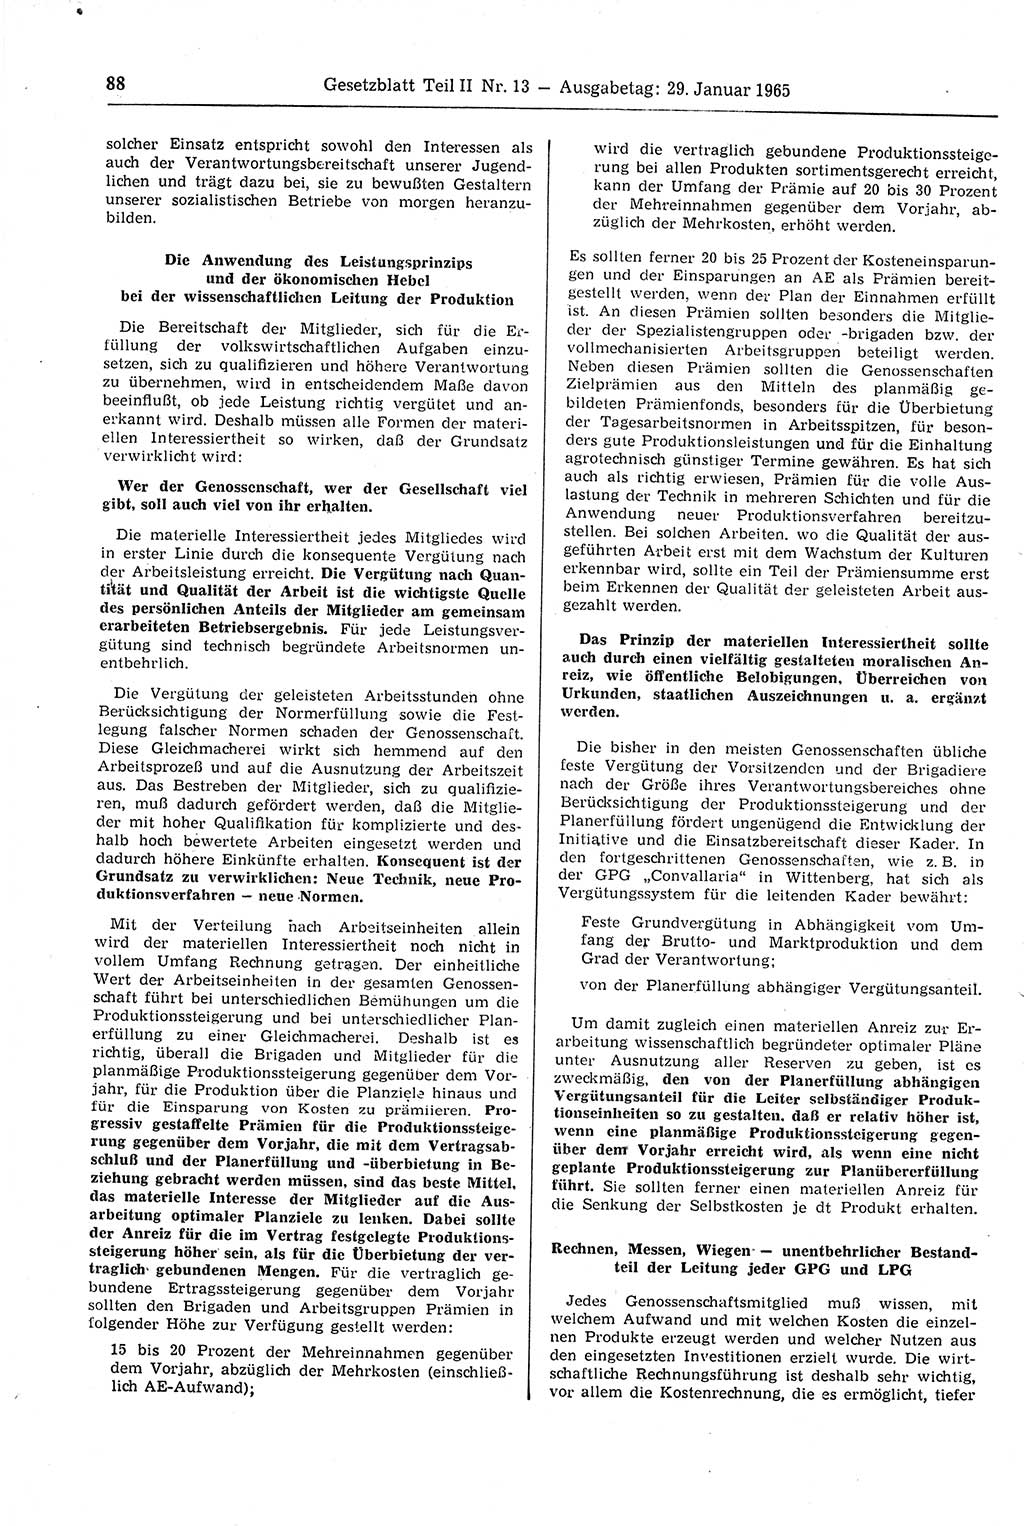 Gesetzblatt (GBl.) der Deutschen Demokratischen Republik (DDR) Teil ⅠⅠ 1965, Seite 88 (GBl. DDR ⅠⅠ 1965, S. 88)